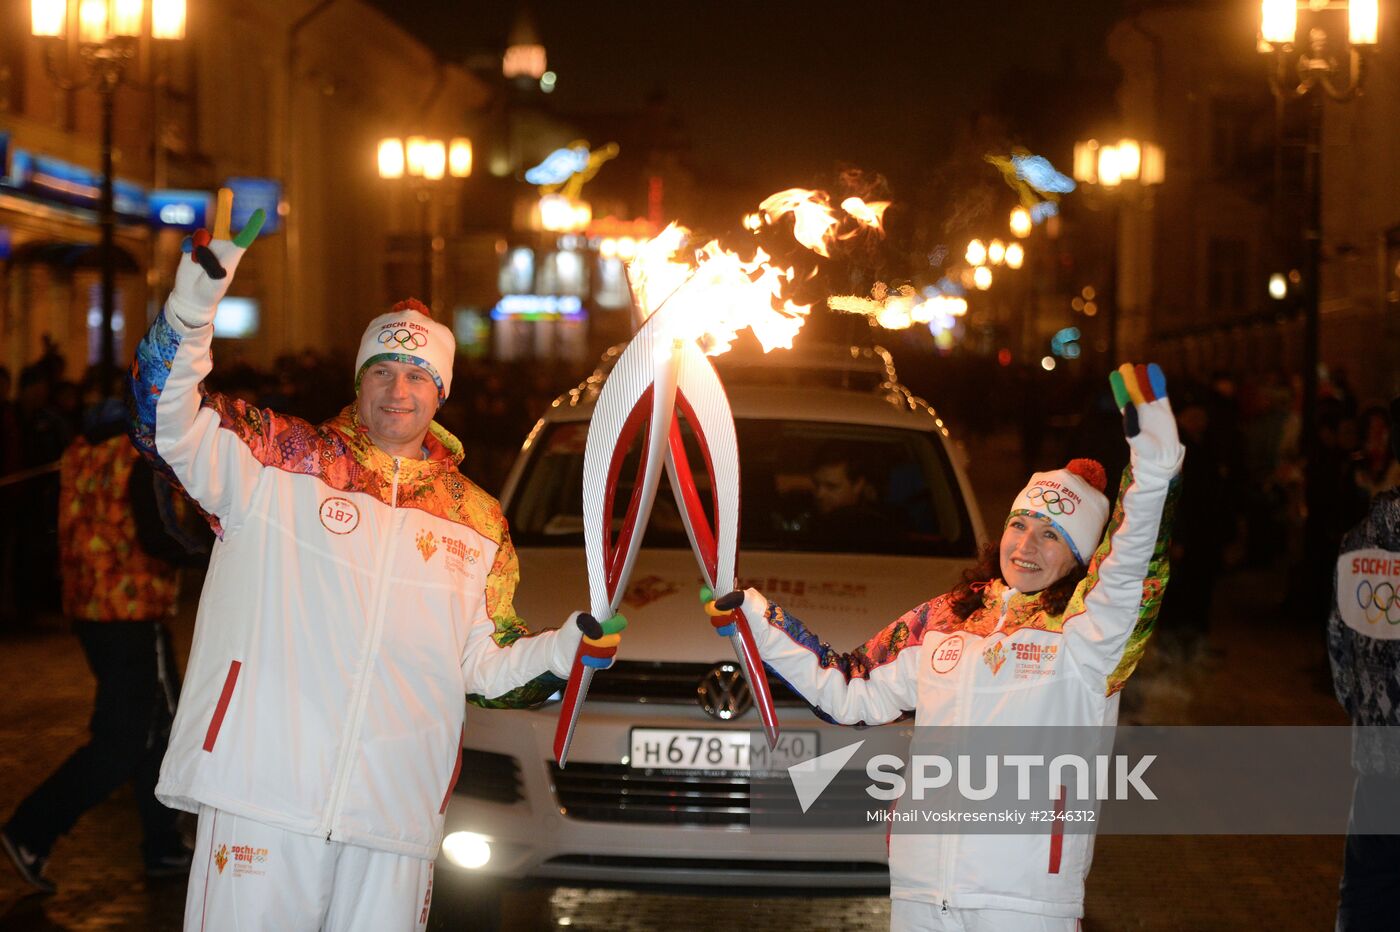 Sochi 2014 Olympic torch relay. Nizhny Novgorod. Day 2